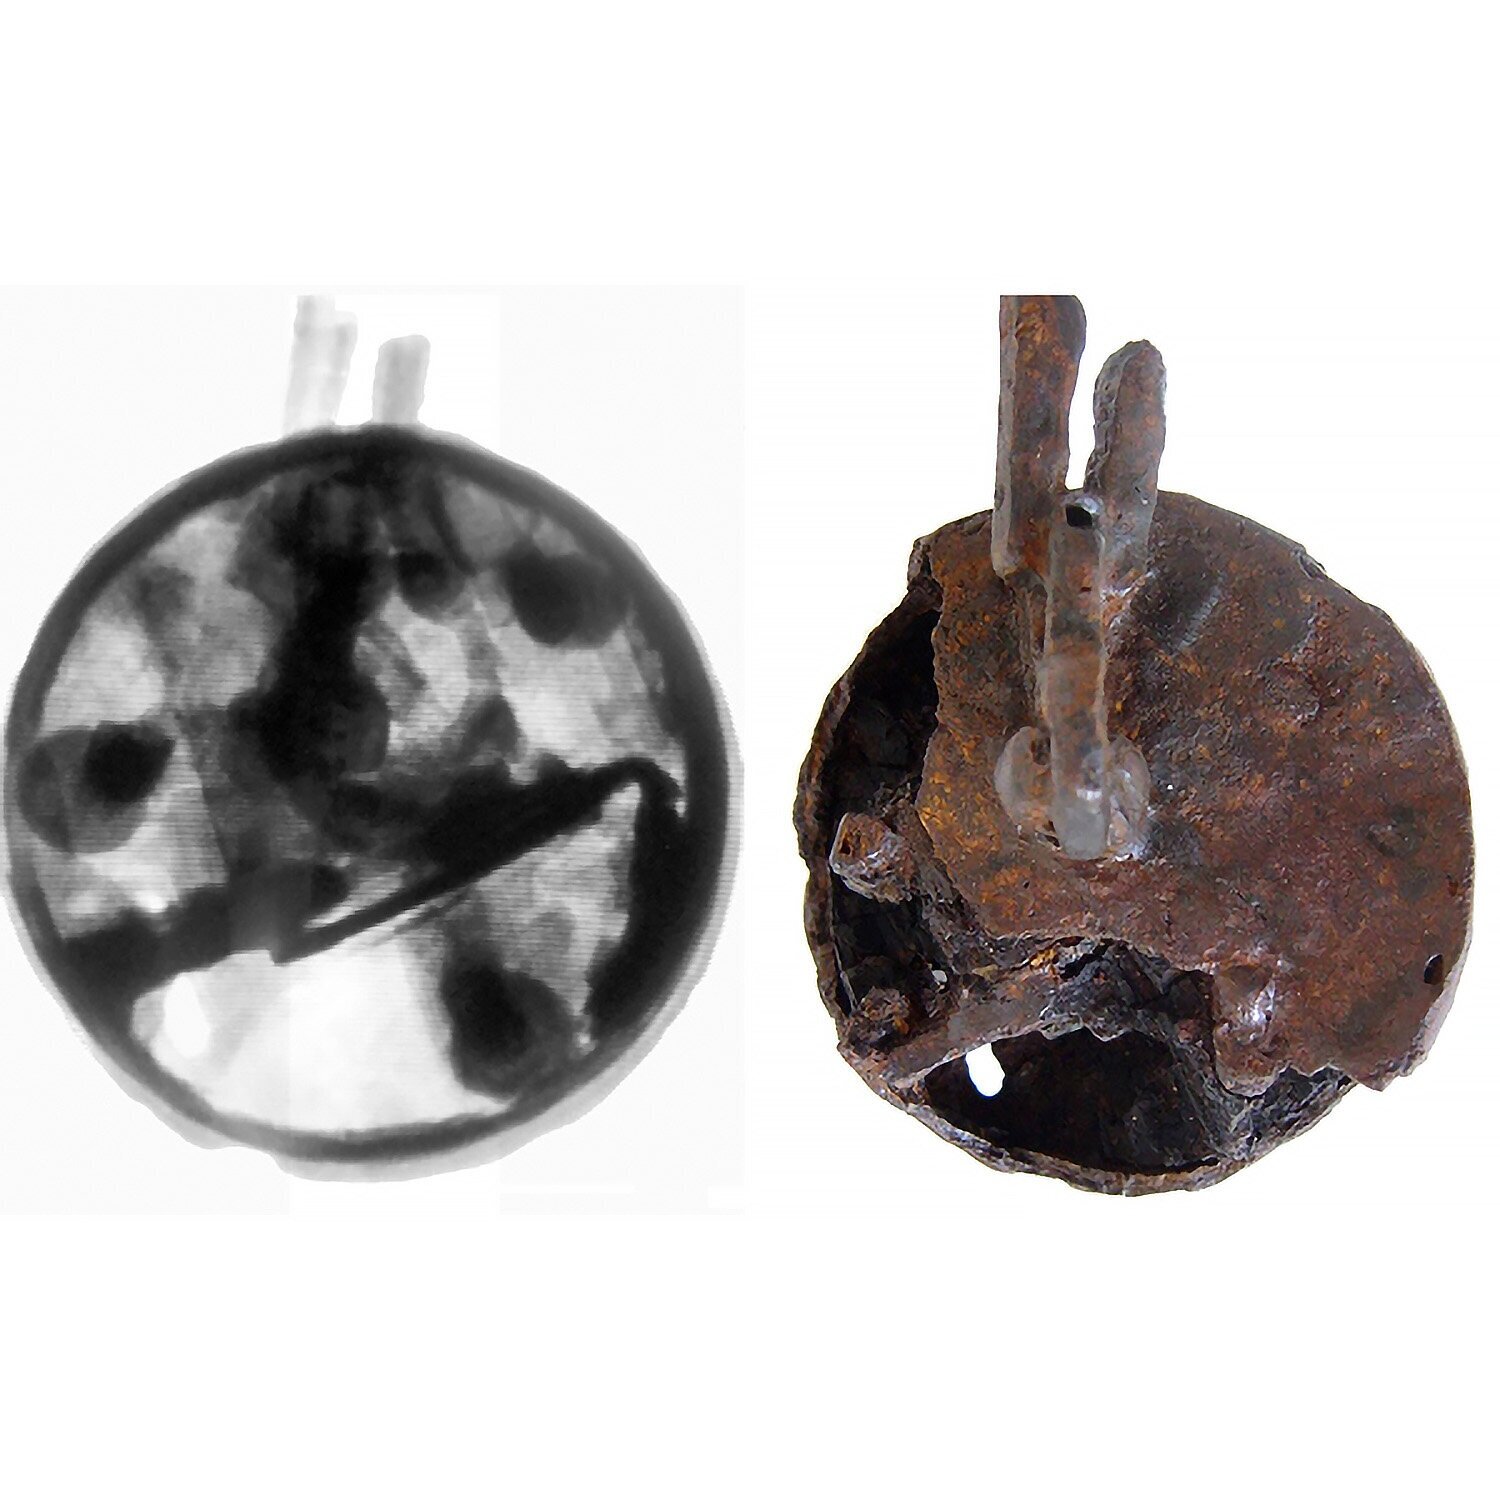  Radiografia RX di un lucchetto in ferro del sito di Zeugma (Turchia). Committente: IFEA 